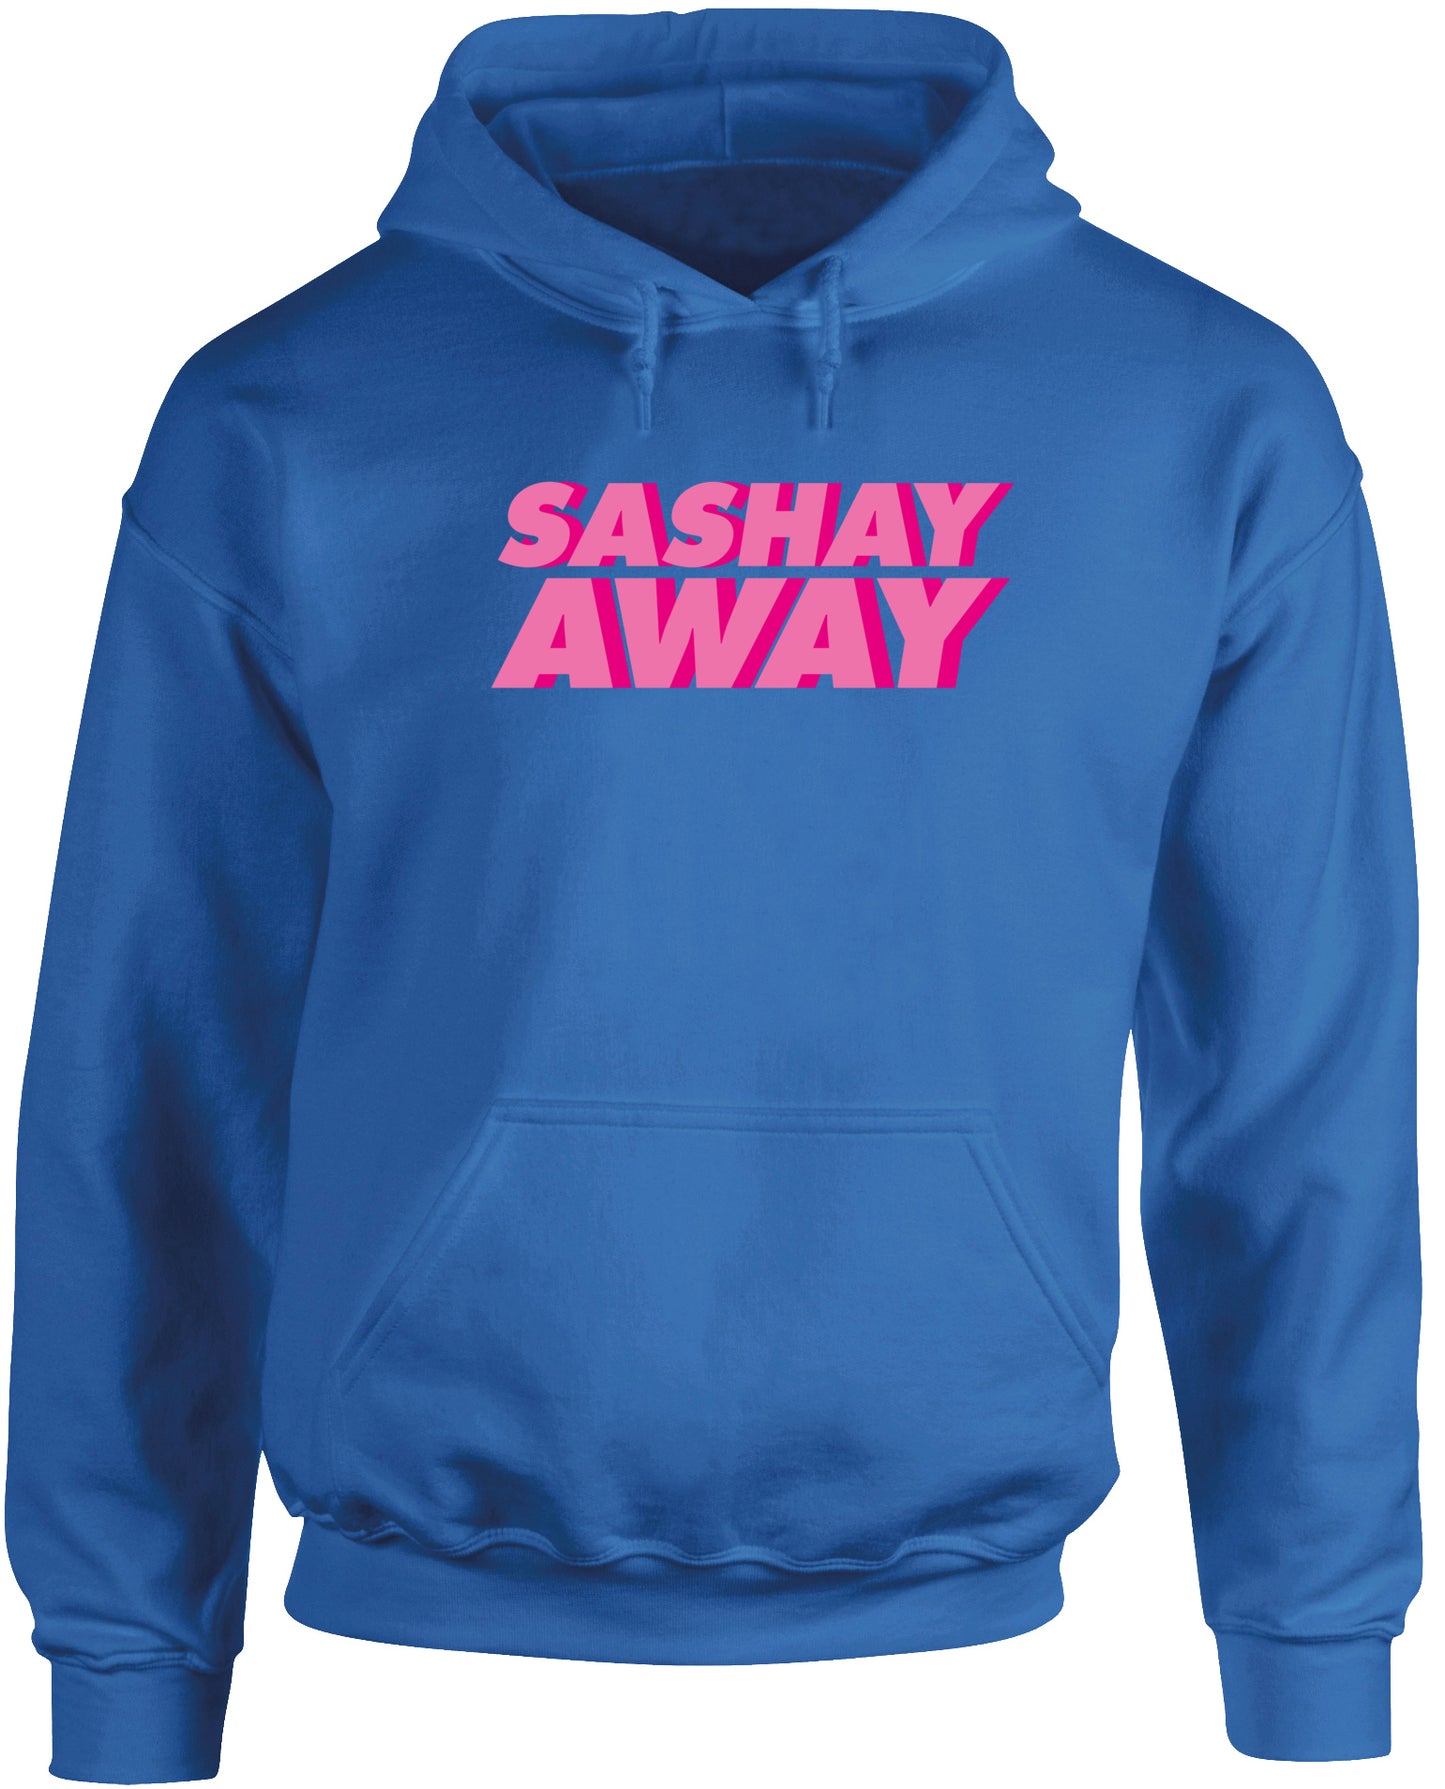 Sashay away unisex Hoodie hooded top